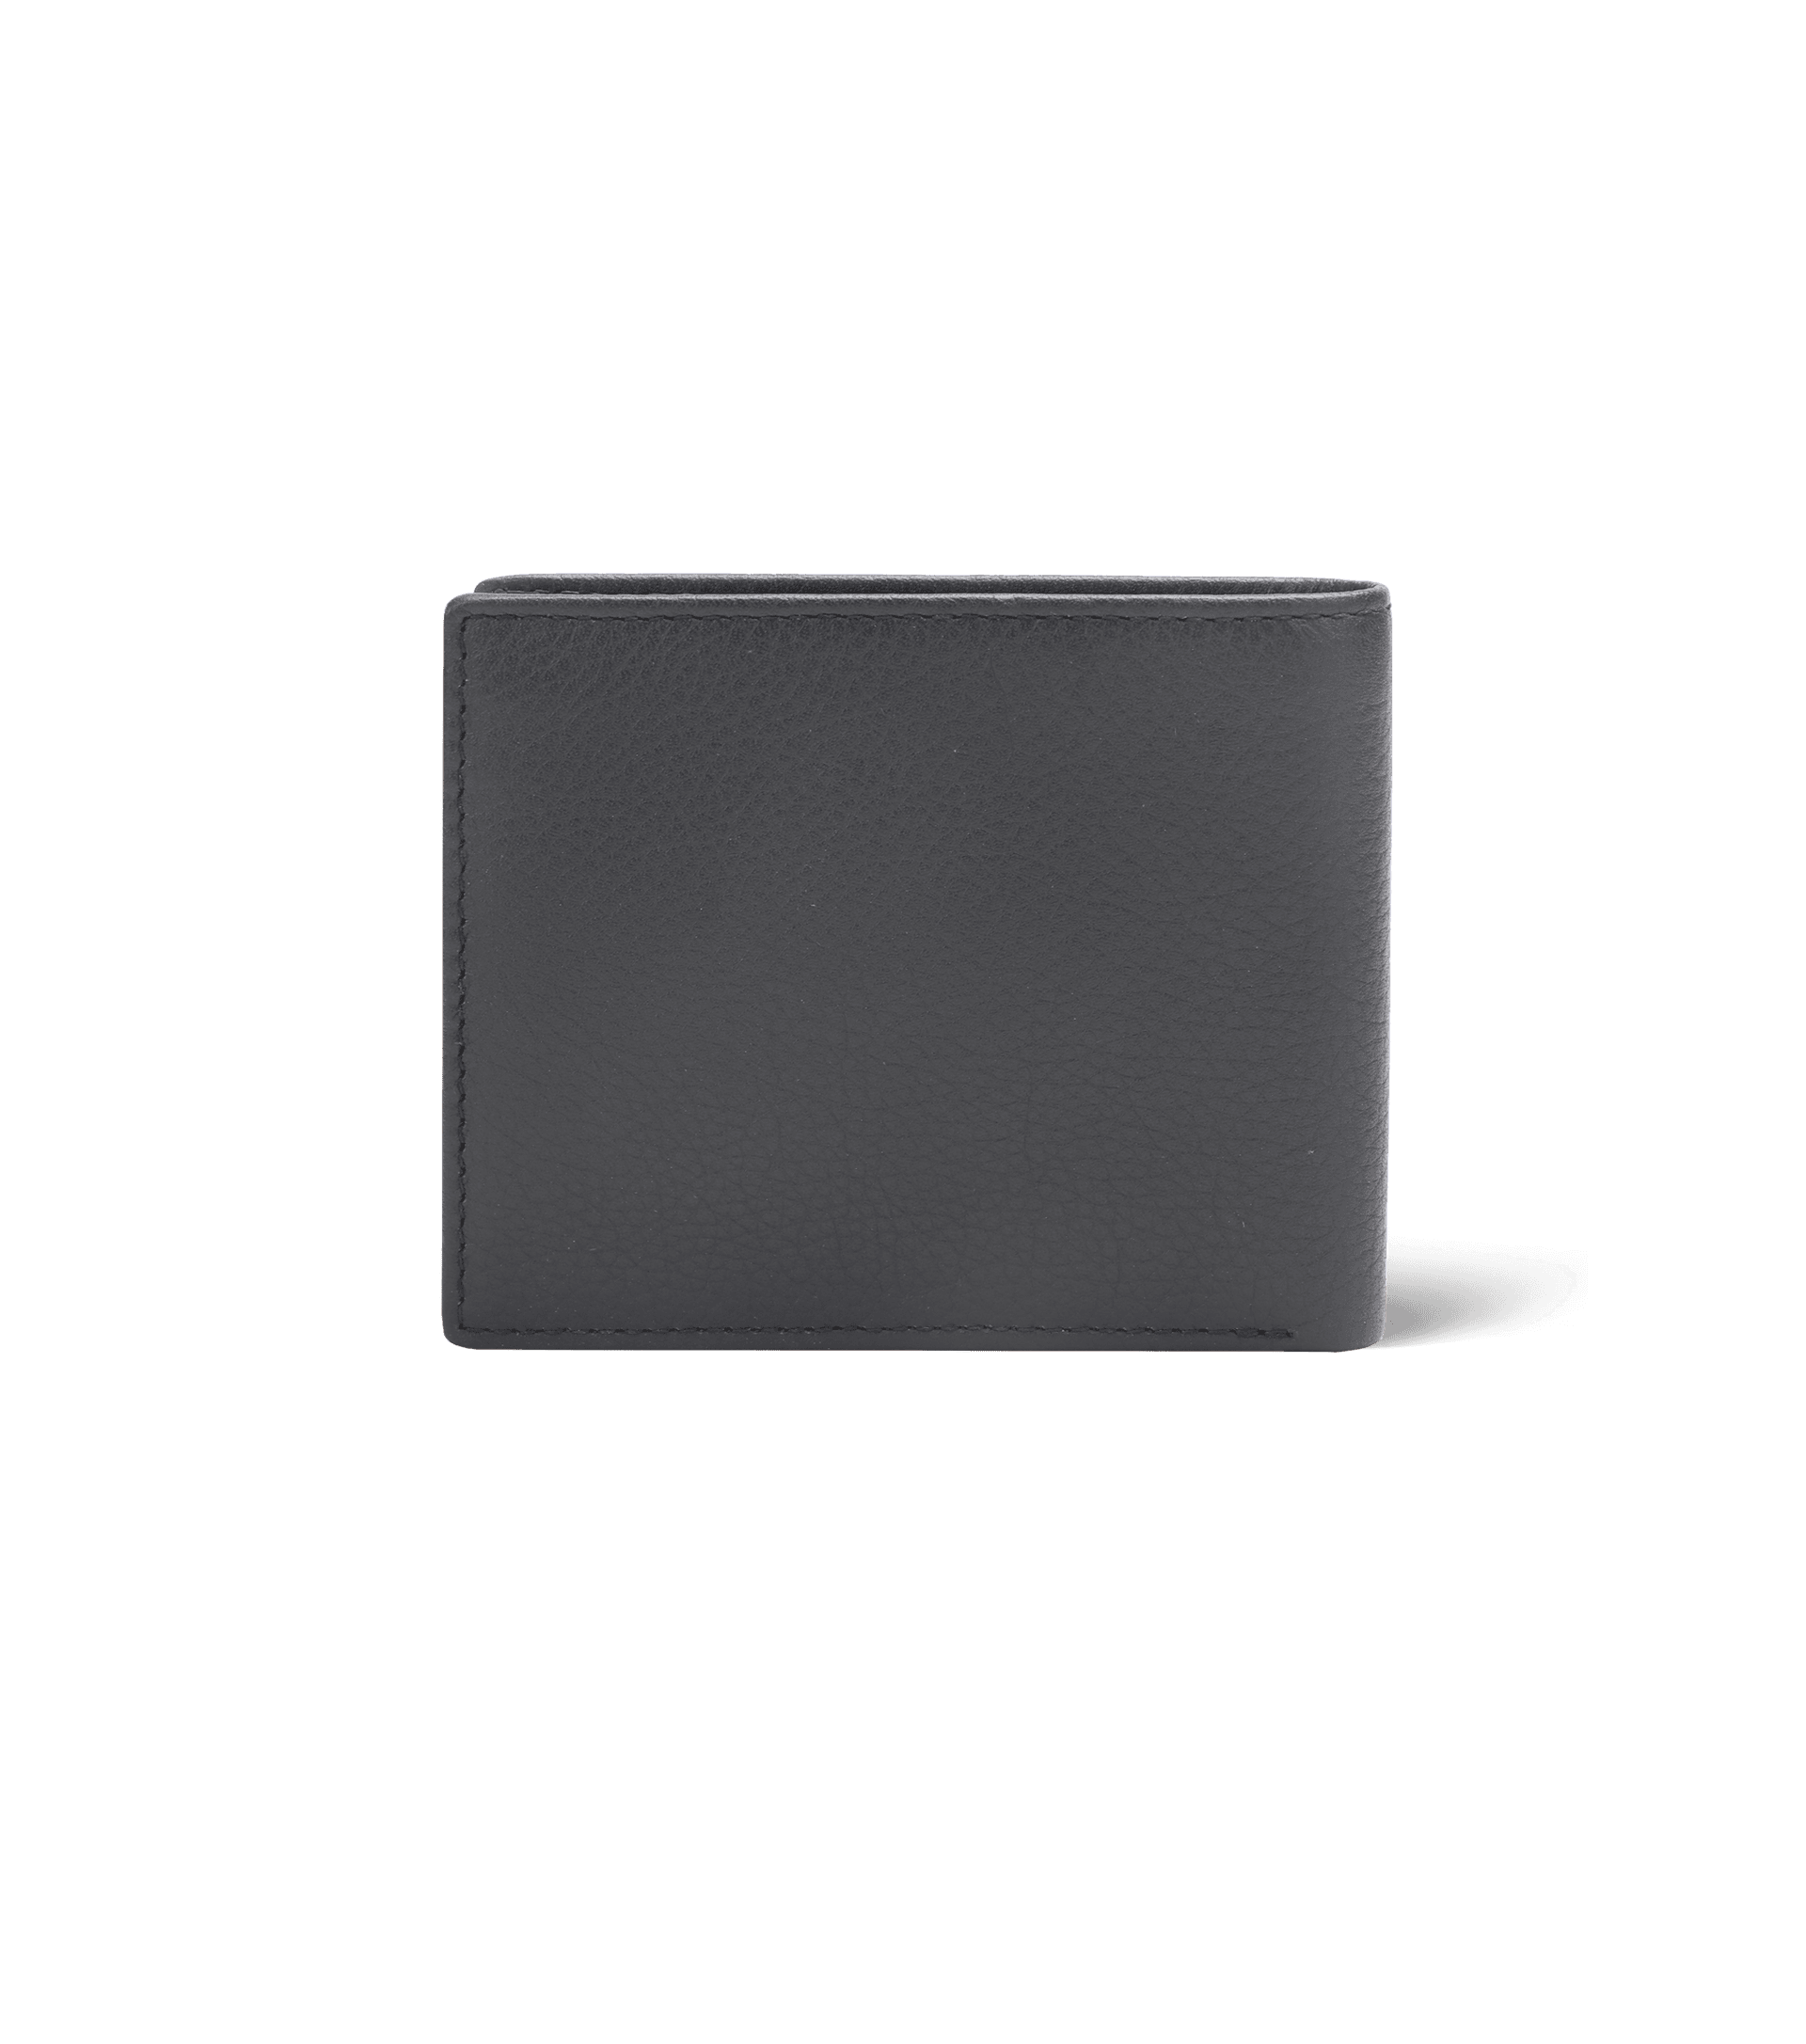 Police wallets - Police Kornel Lite Slim Wallet Black